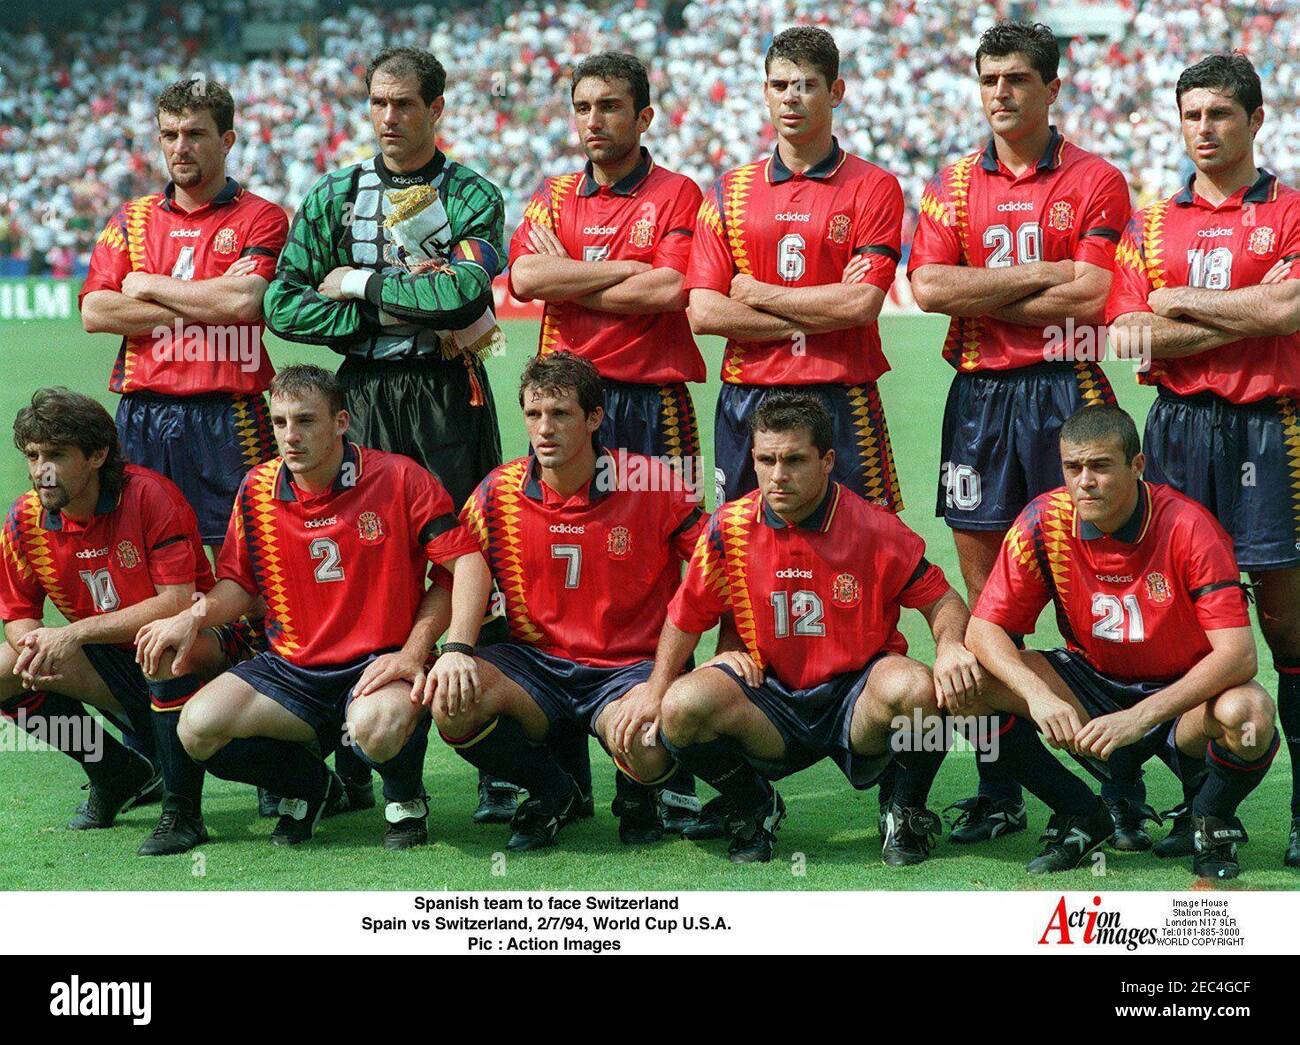 el-equipo-espanol-se-enfrentara-al-futbol-de-suiza-copa-mundial-de-la-fifa-1994-segunda-ronda-espana-contra-suiza-estadio-rfk-memorial-washington-2-7-94-pic-imagenes-de-accion-2ec4gcf.jpg